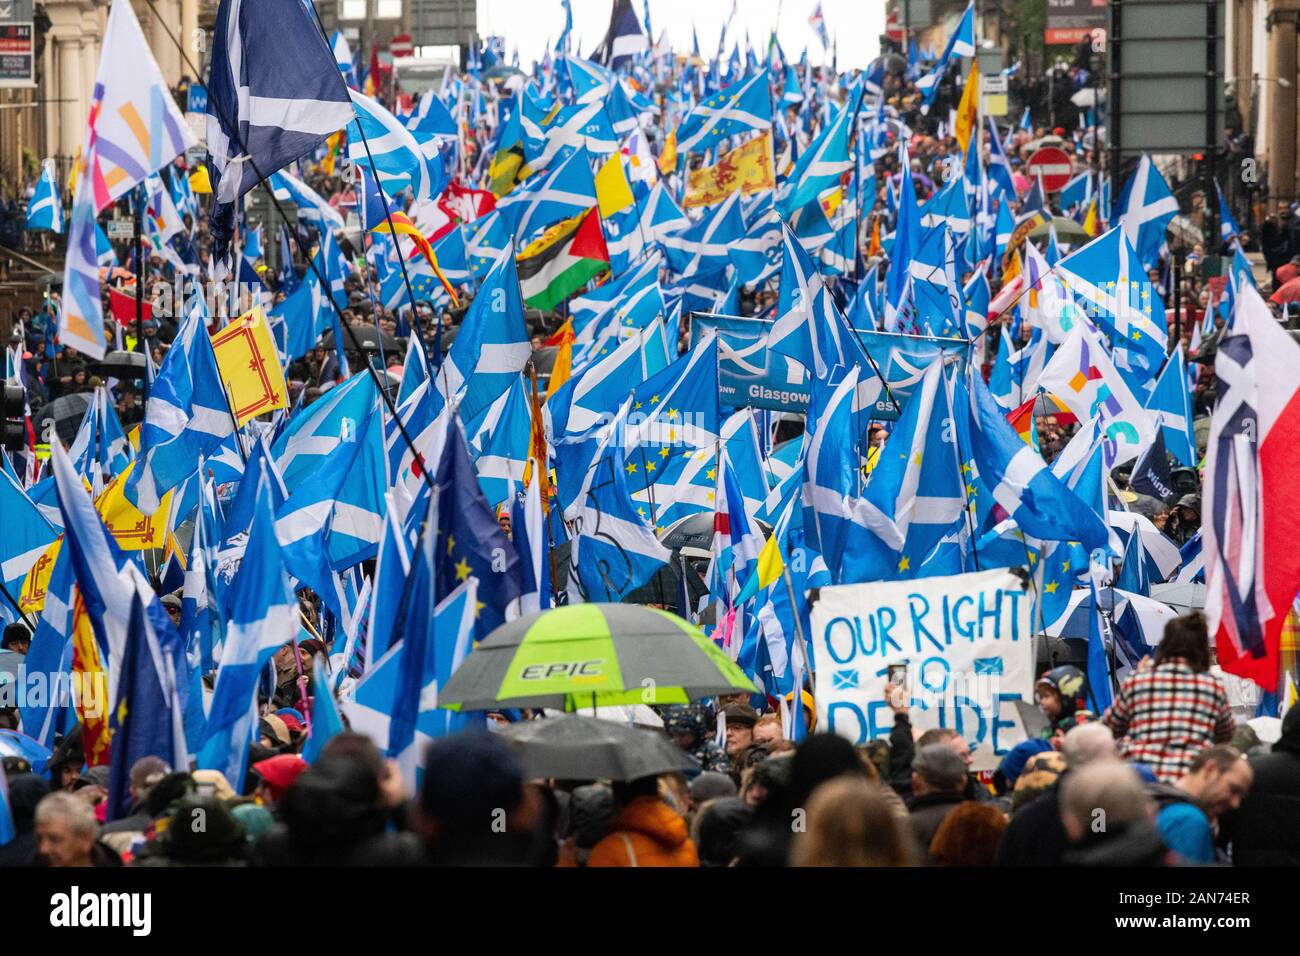 Partisans de l'indépendance écossaise marching in Glasgow, 11 Janvier 2020 Banque D'Images